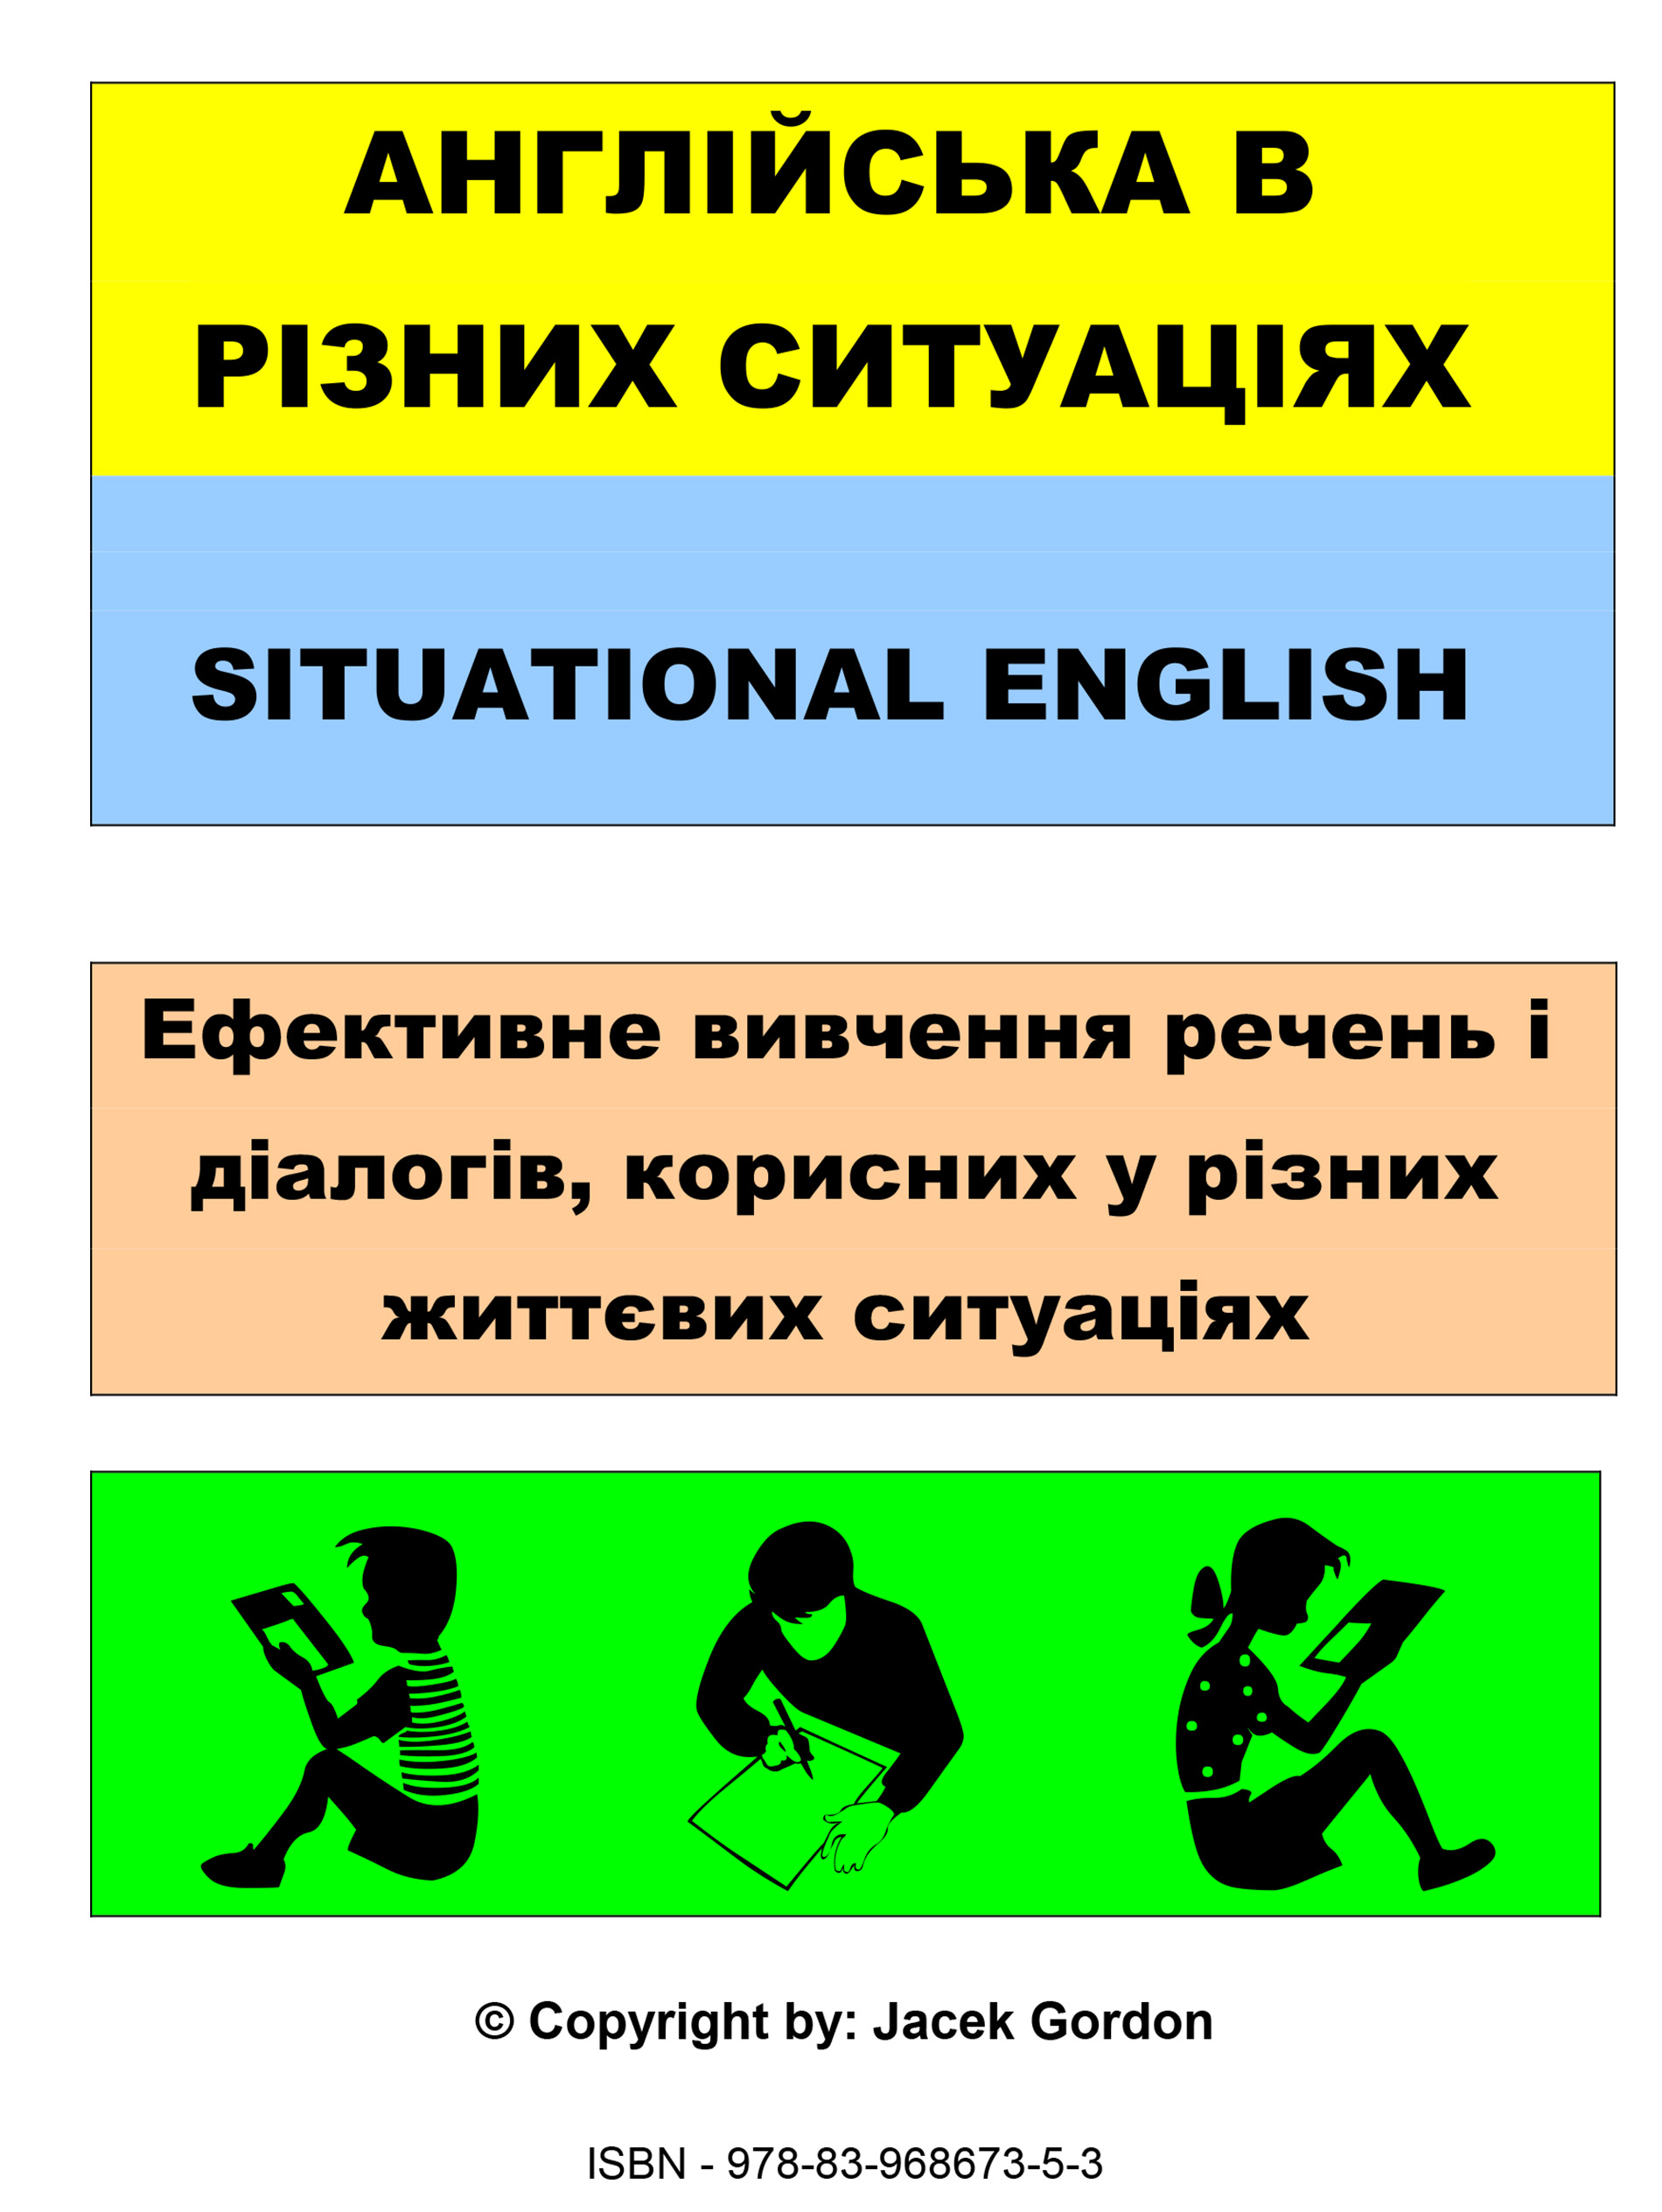 Situational English